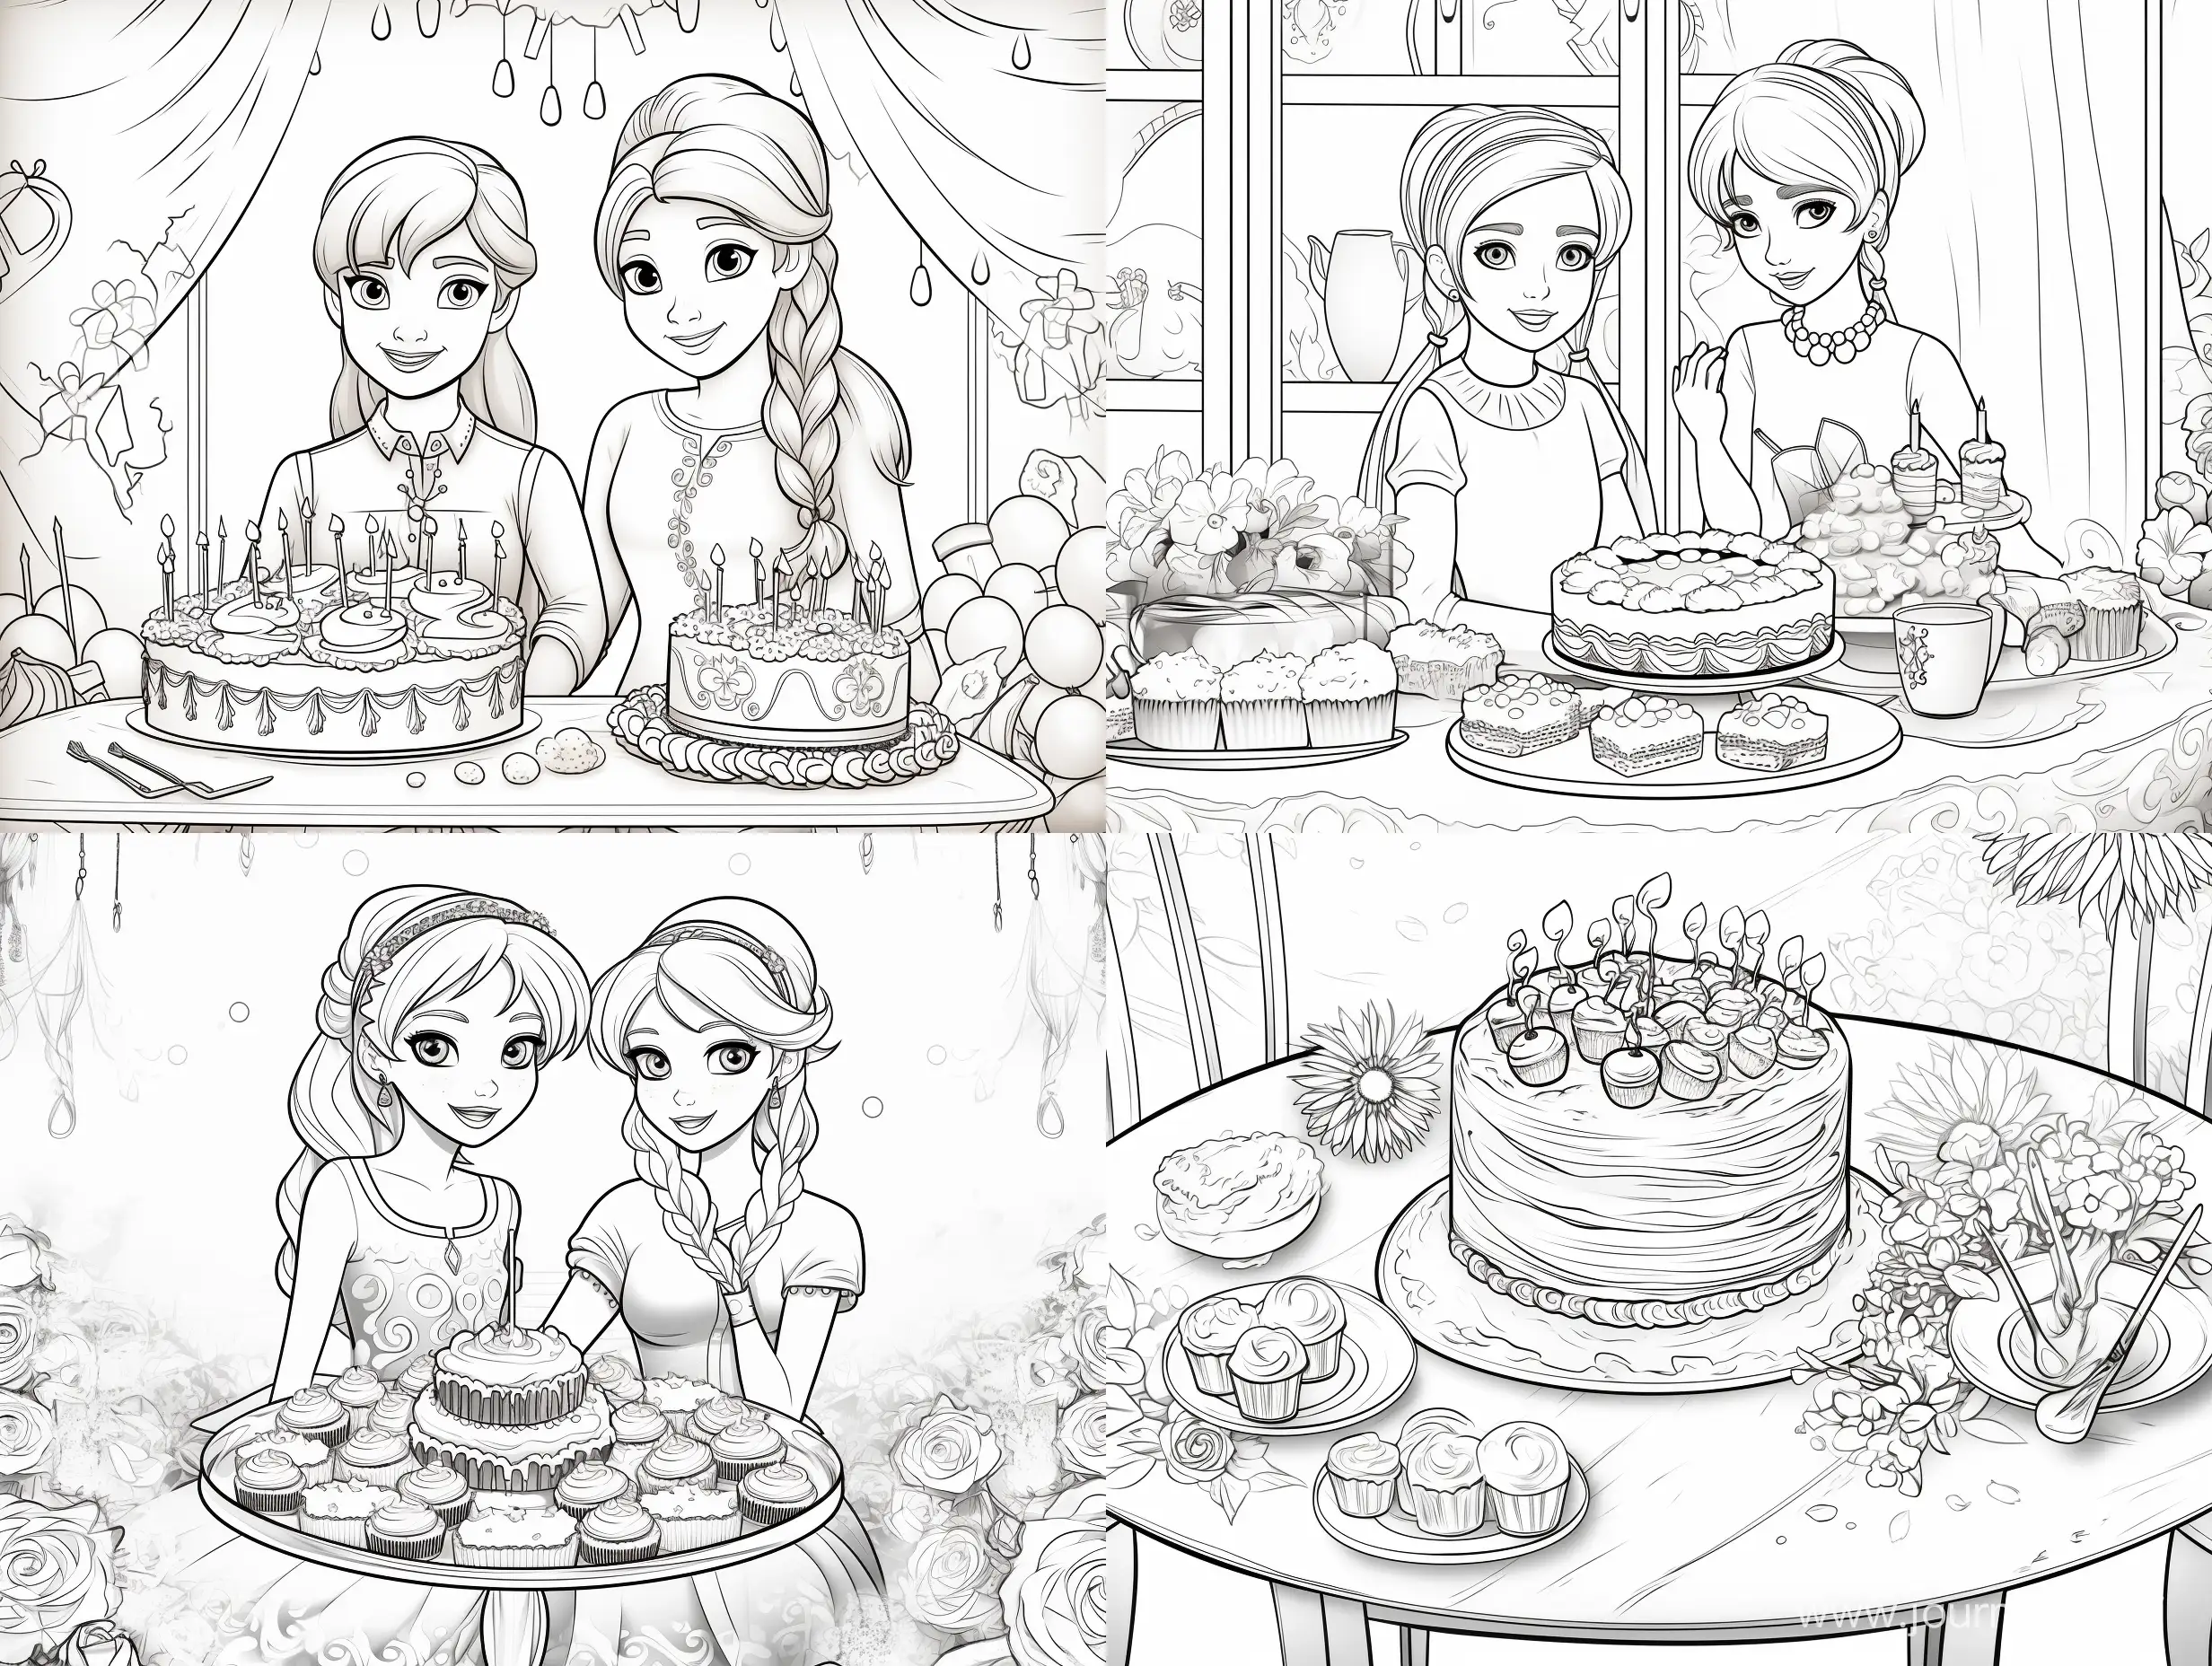 Anna ed Elsa Disney frozen che invitano ad una festa di compleanno. Si vede una tavola piena di dolci ed In mezzo una torta gigante col numero 3. Disegno da colorare